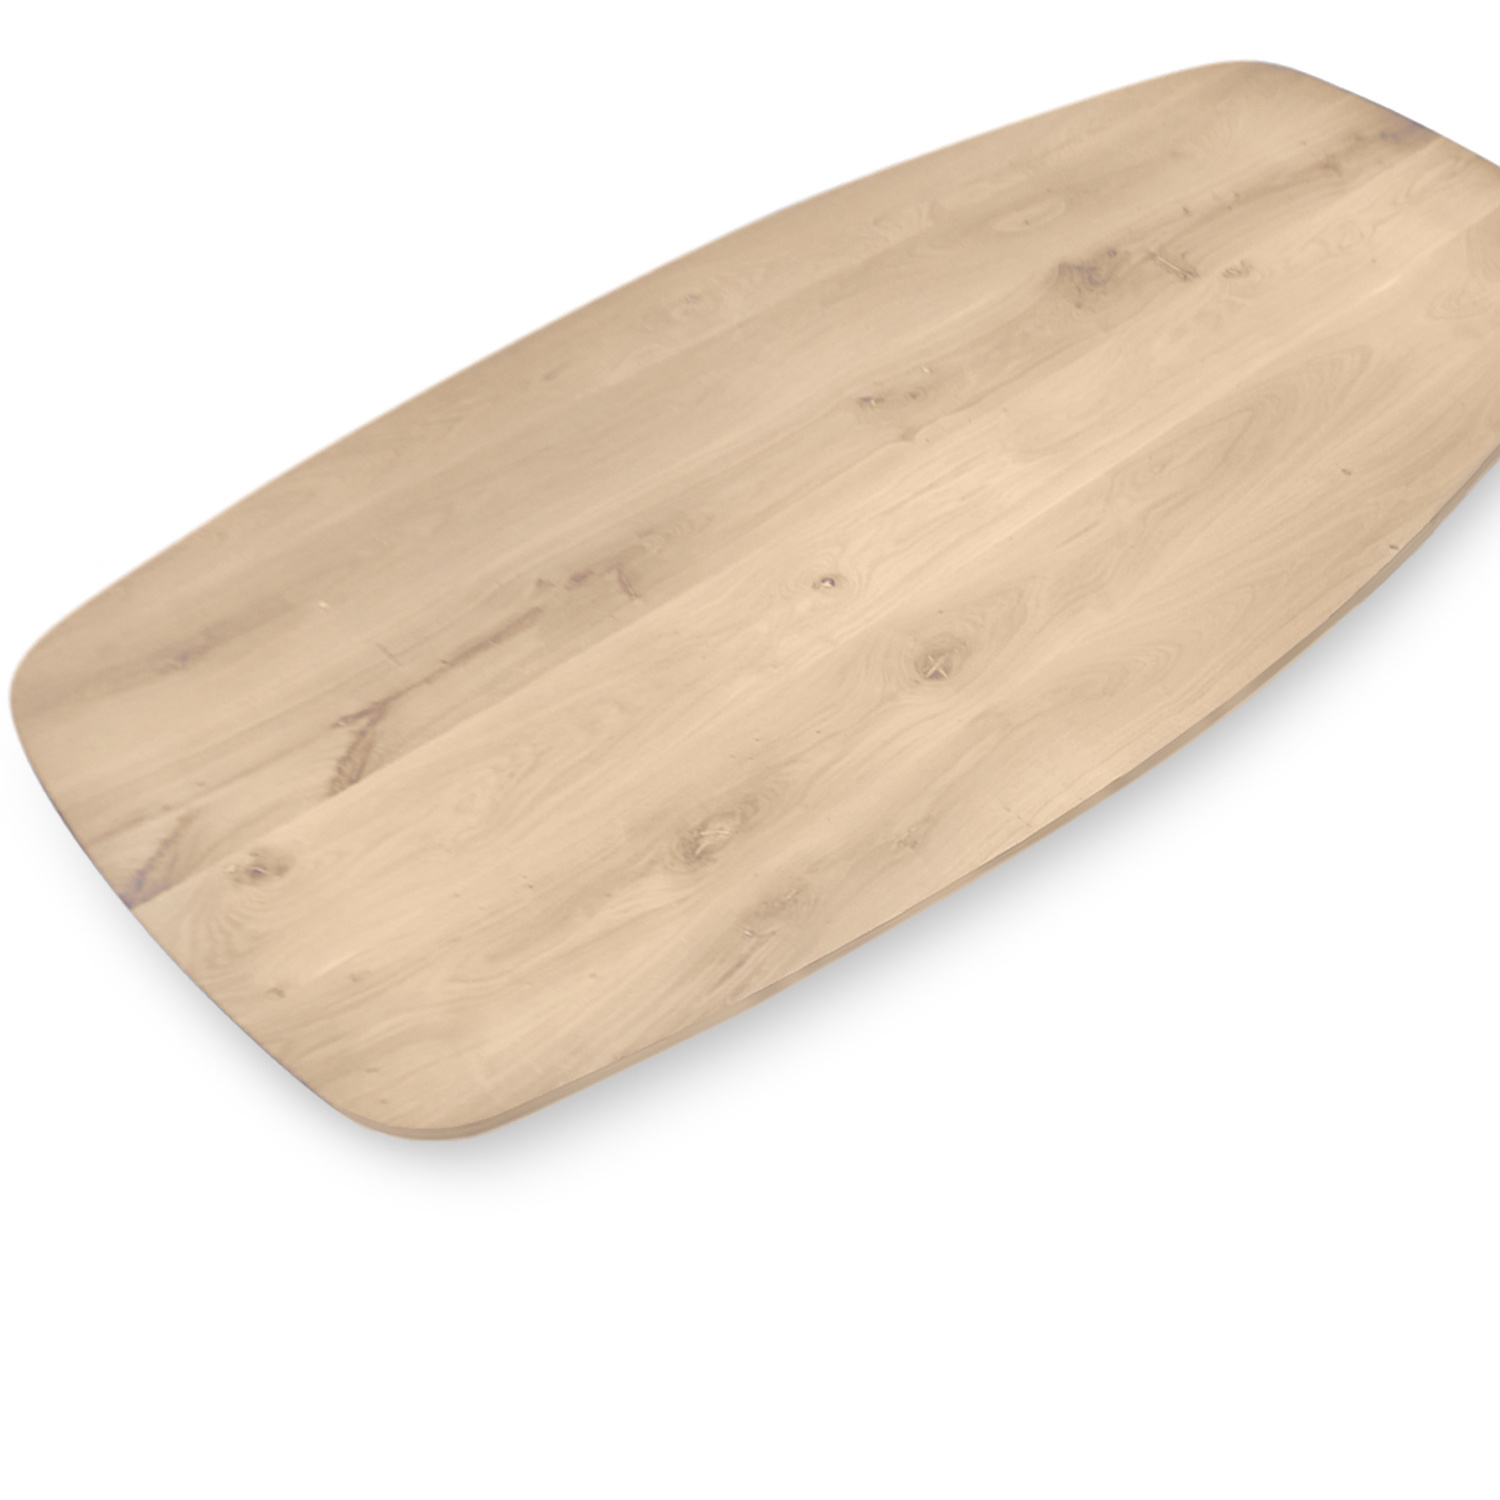  Tischplatte Eiche dänisch-oval - 2,5 cm dick - Eichenholz Rustikal - Bootsform Eiche Tischplatte massiv - HF 8-12%